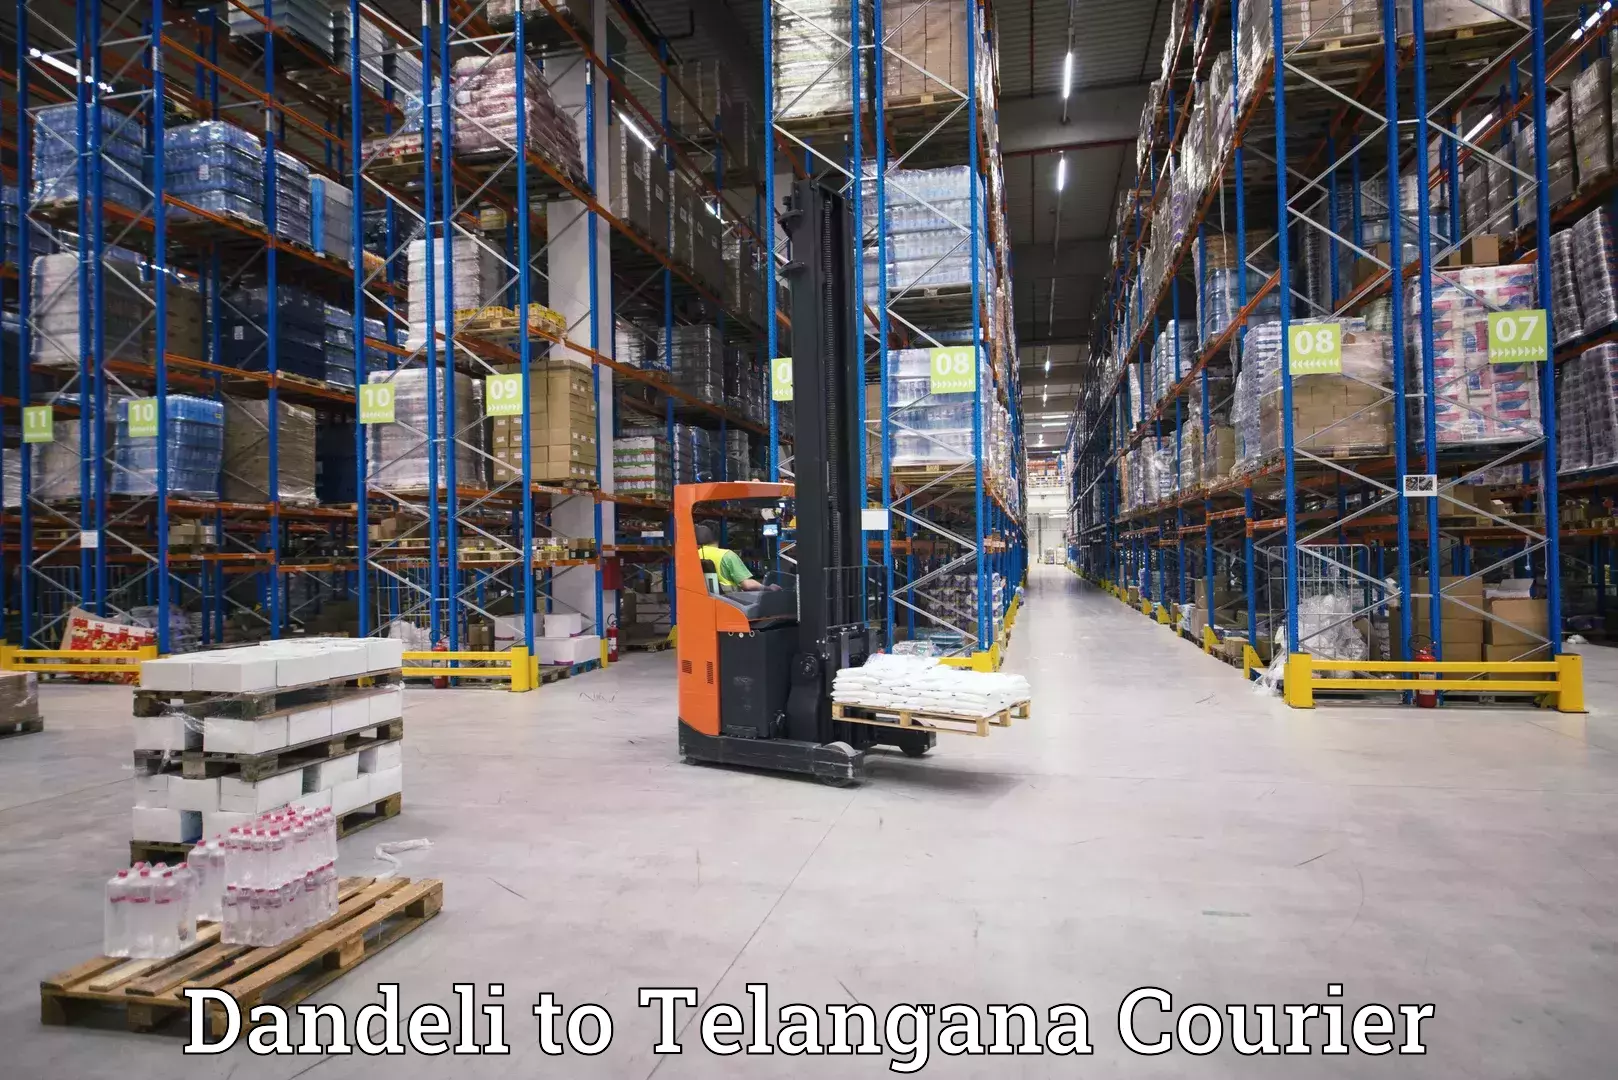 Full-service courier options Dandeli to Zaheerabad